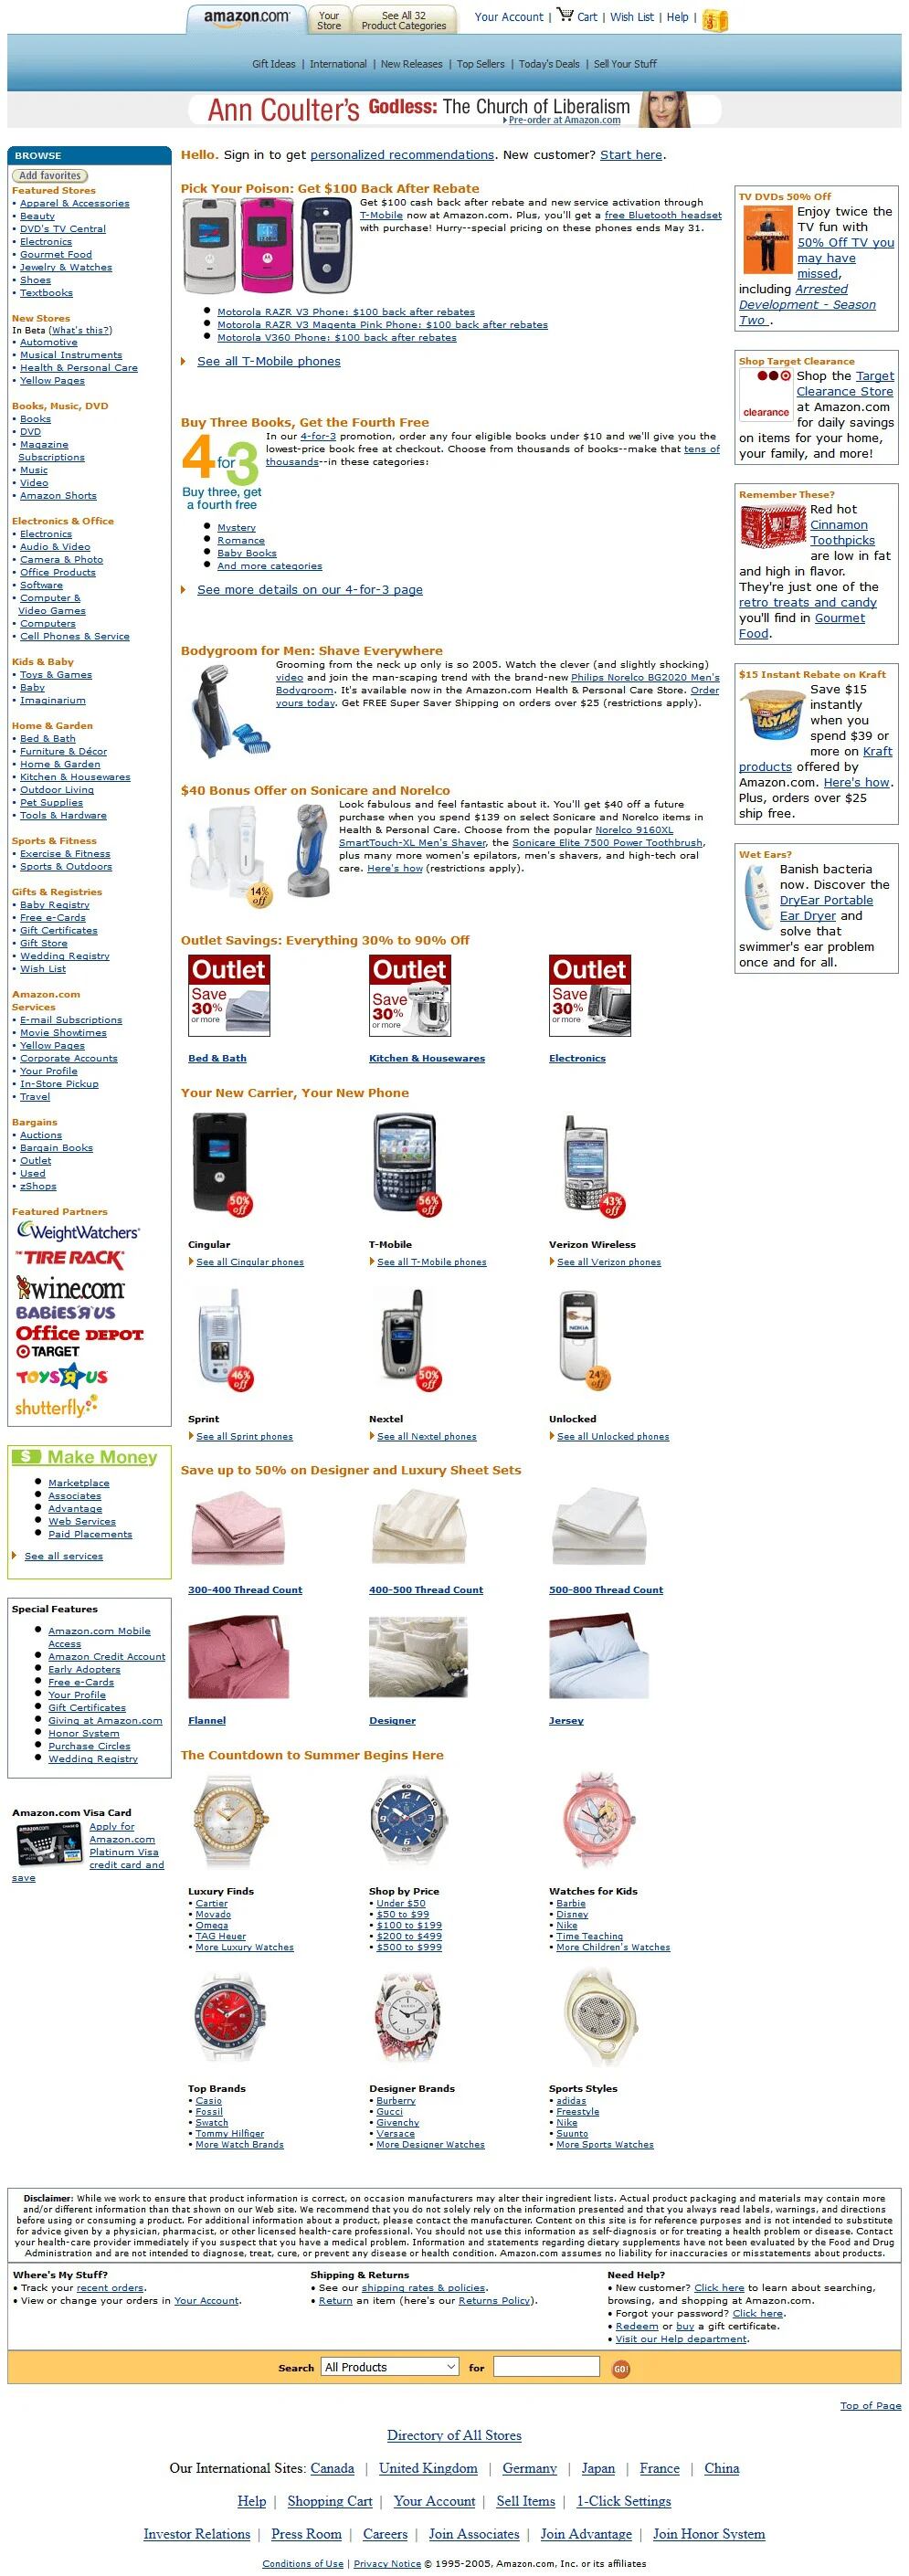 Página web de Amazon en 2006. (Web Design Museum)